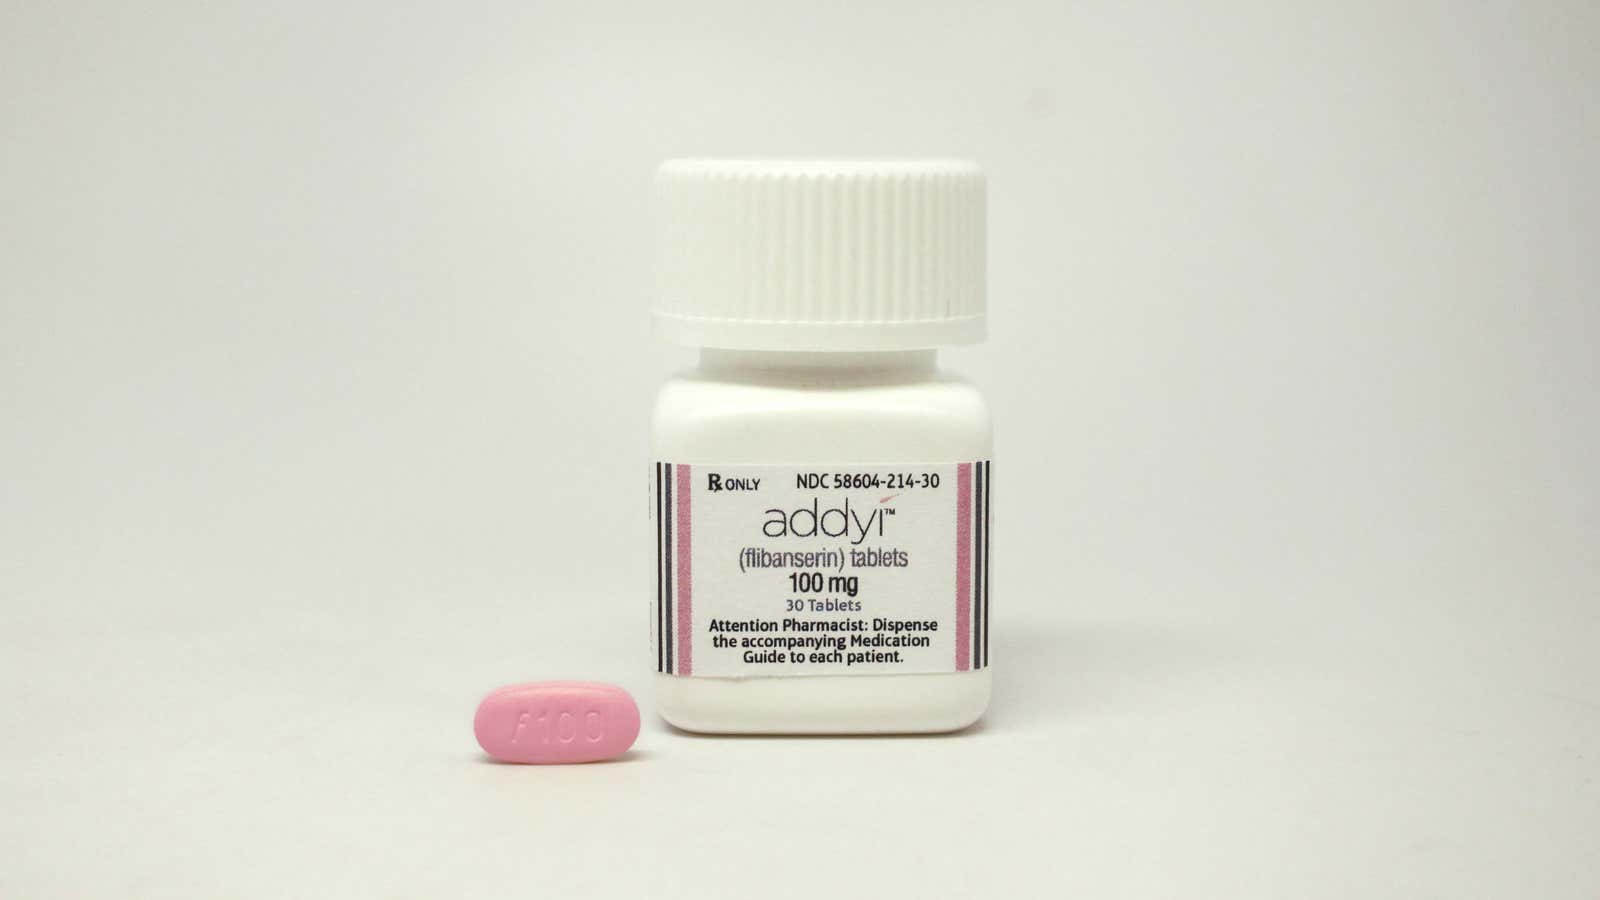 The little pink pill